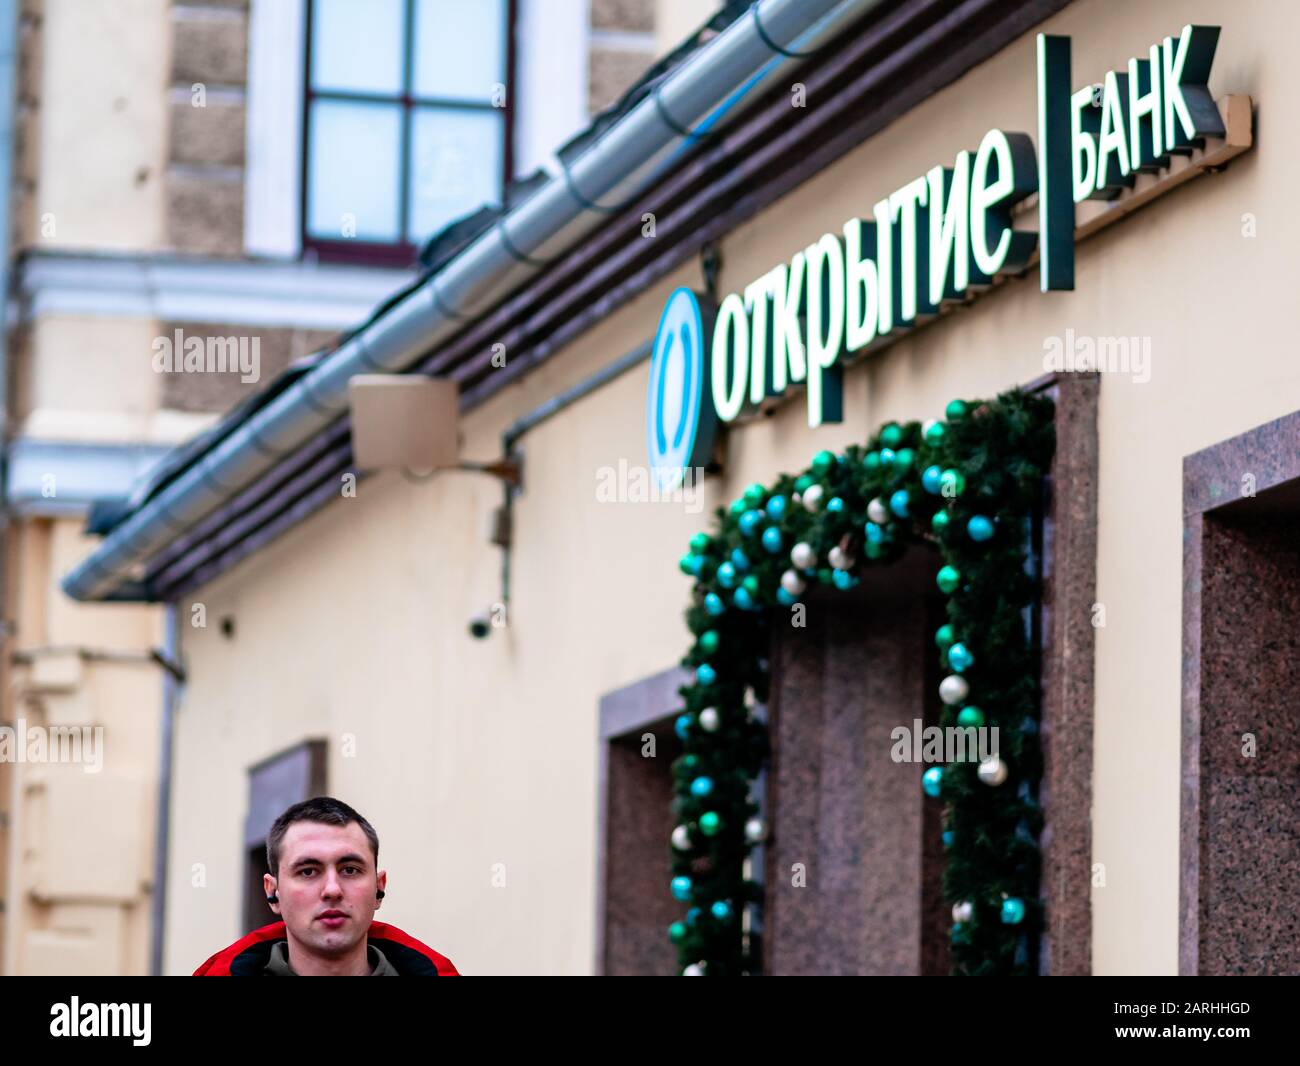 Mosca, Russia - 17 gennaio 2020: L'uomo vicino a Otkritie Bank firma sopra l'entrata. Garland di Natale di giocattoli di Natale e rami di abete intorno Foto Stock